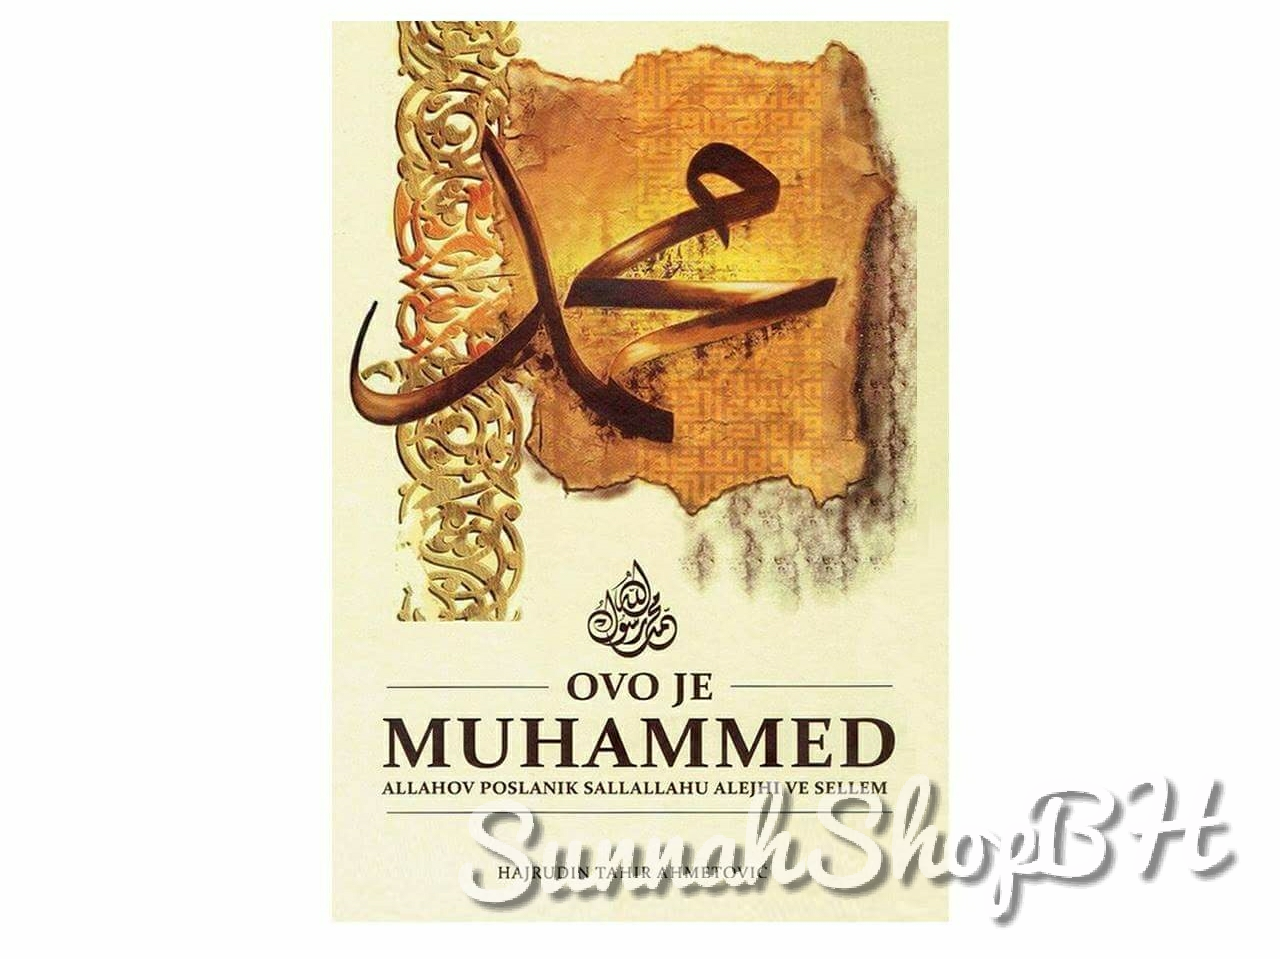 Islamske knjige - Ovo je Muhammed, sallallahu alejhi we sellem